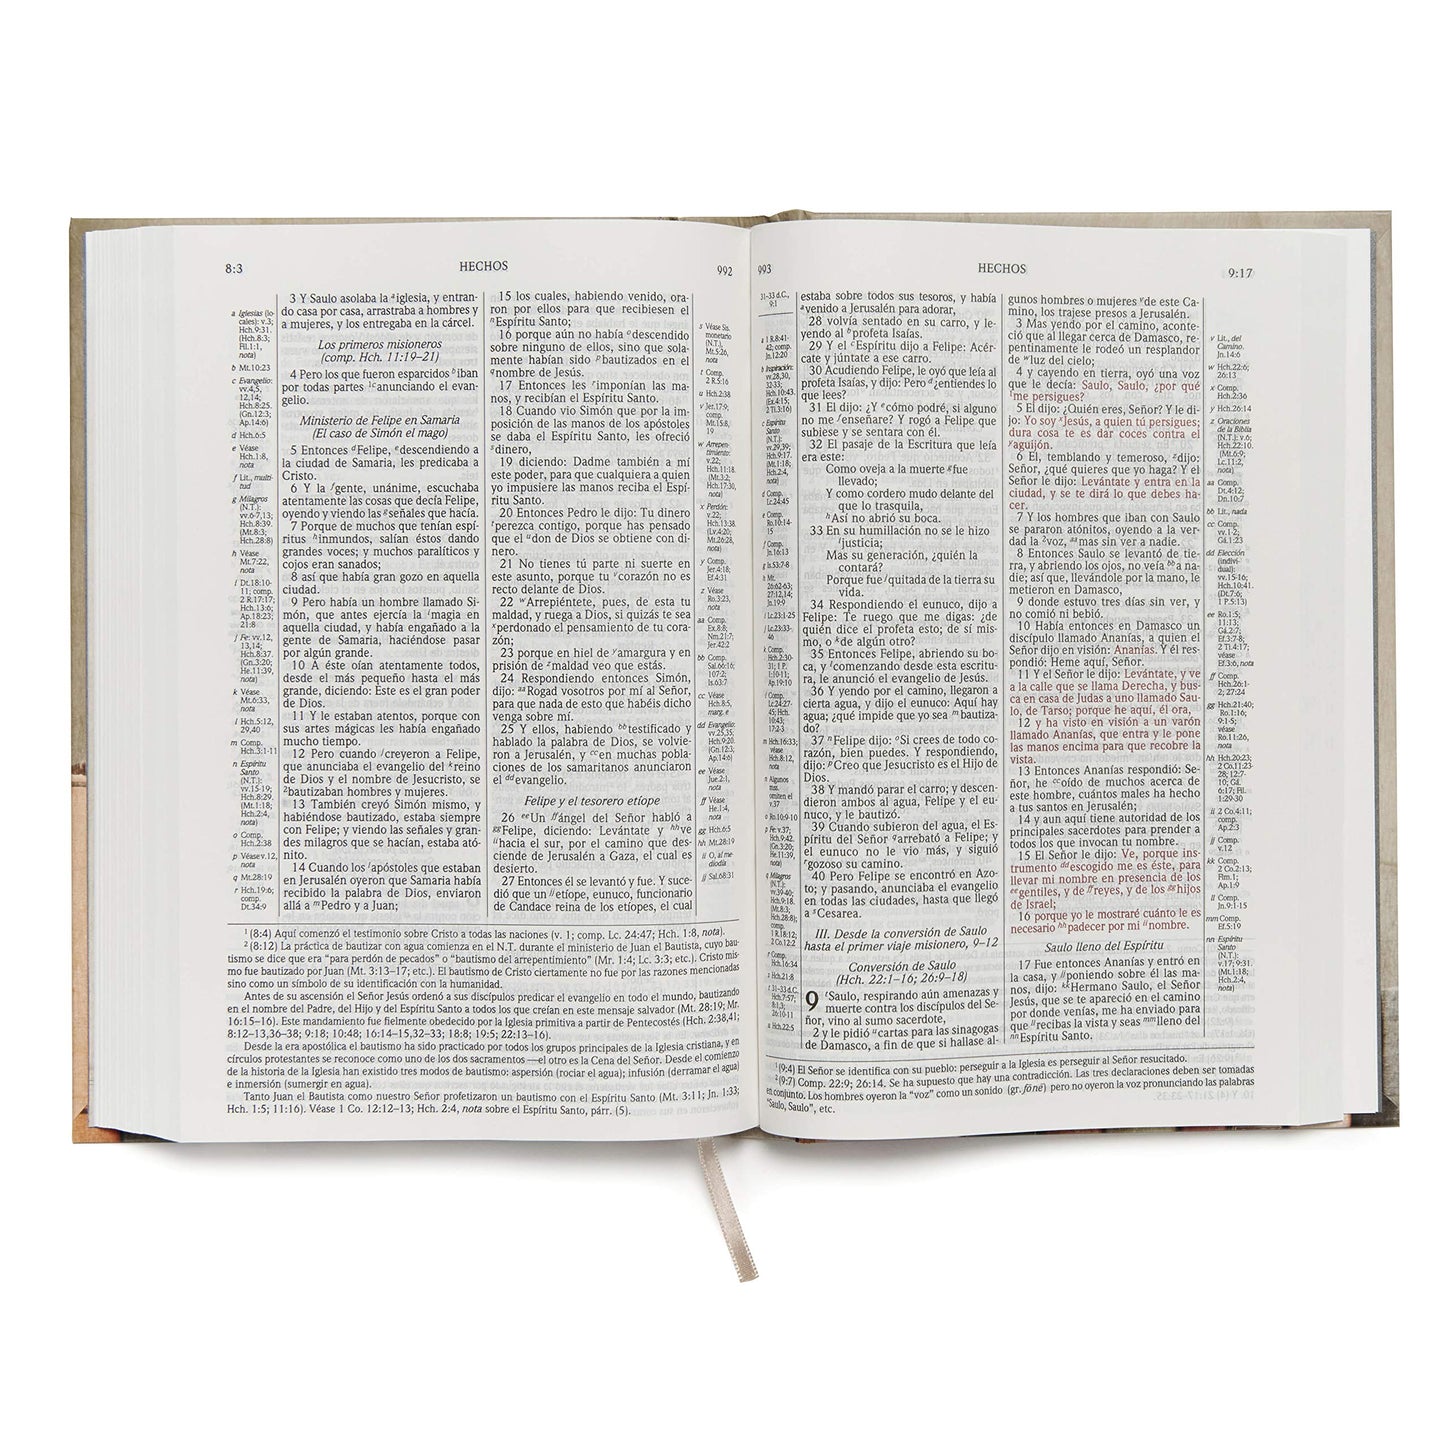 RVR 1960 Biblia de Estudio Scofield, tapa dura (Spanish Edition)